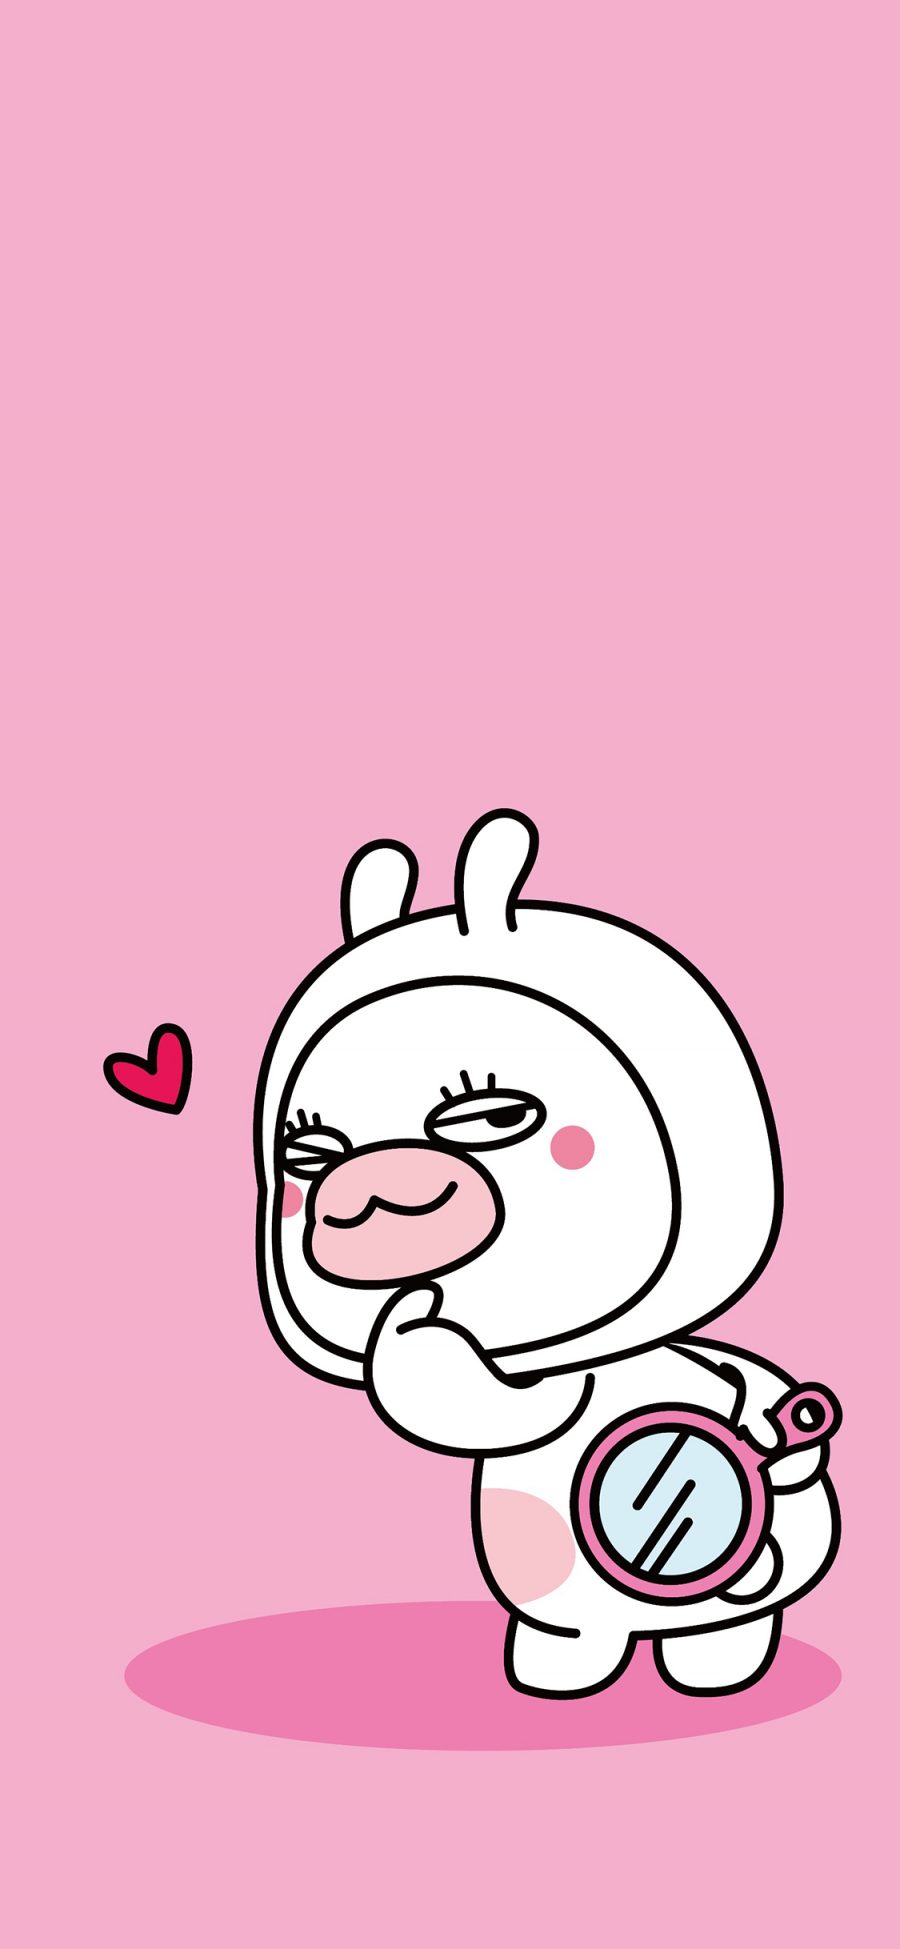 [2436×1125]夏萌猫 可爱 粉色 爱心 回头 兔子 苹果手机动漫壁纸图片